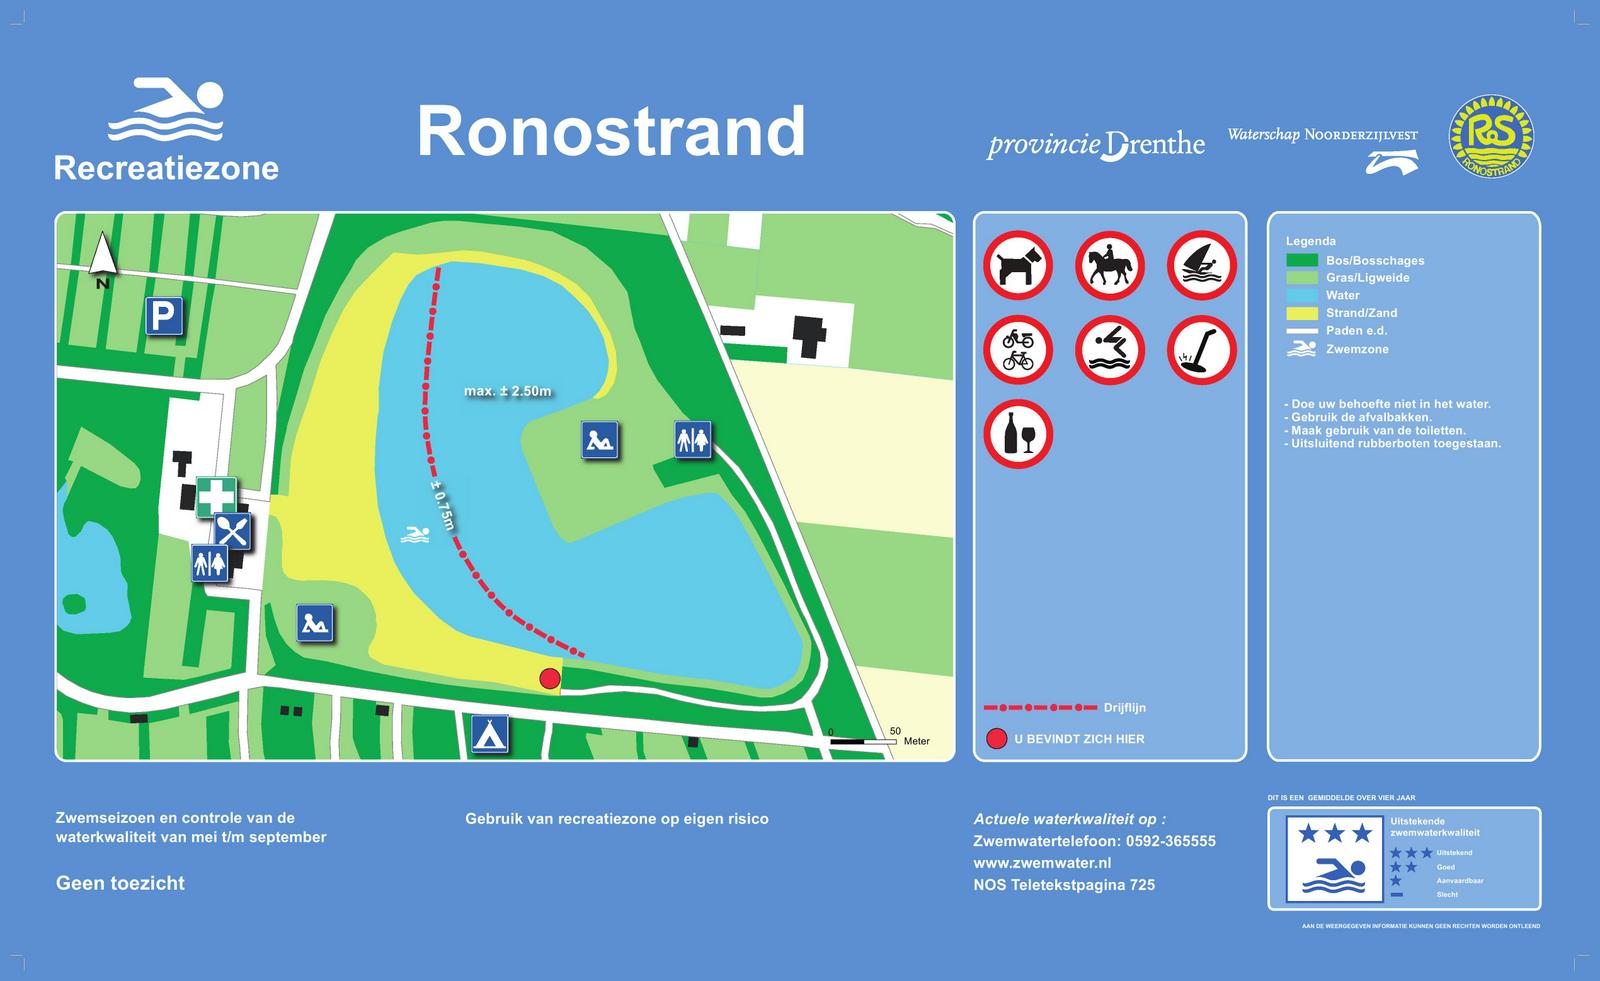 Het informatiebord bij zwemlocatie Ronostrand